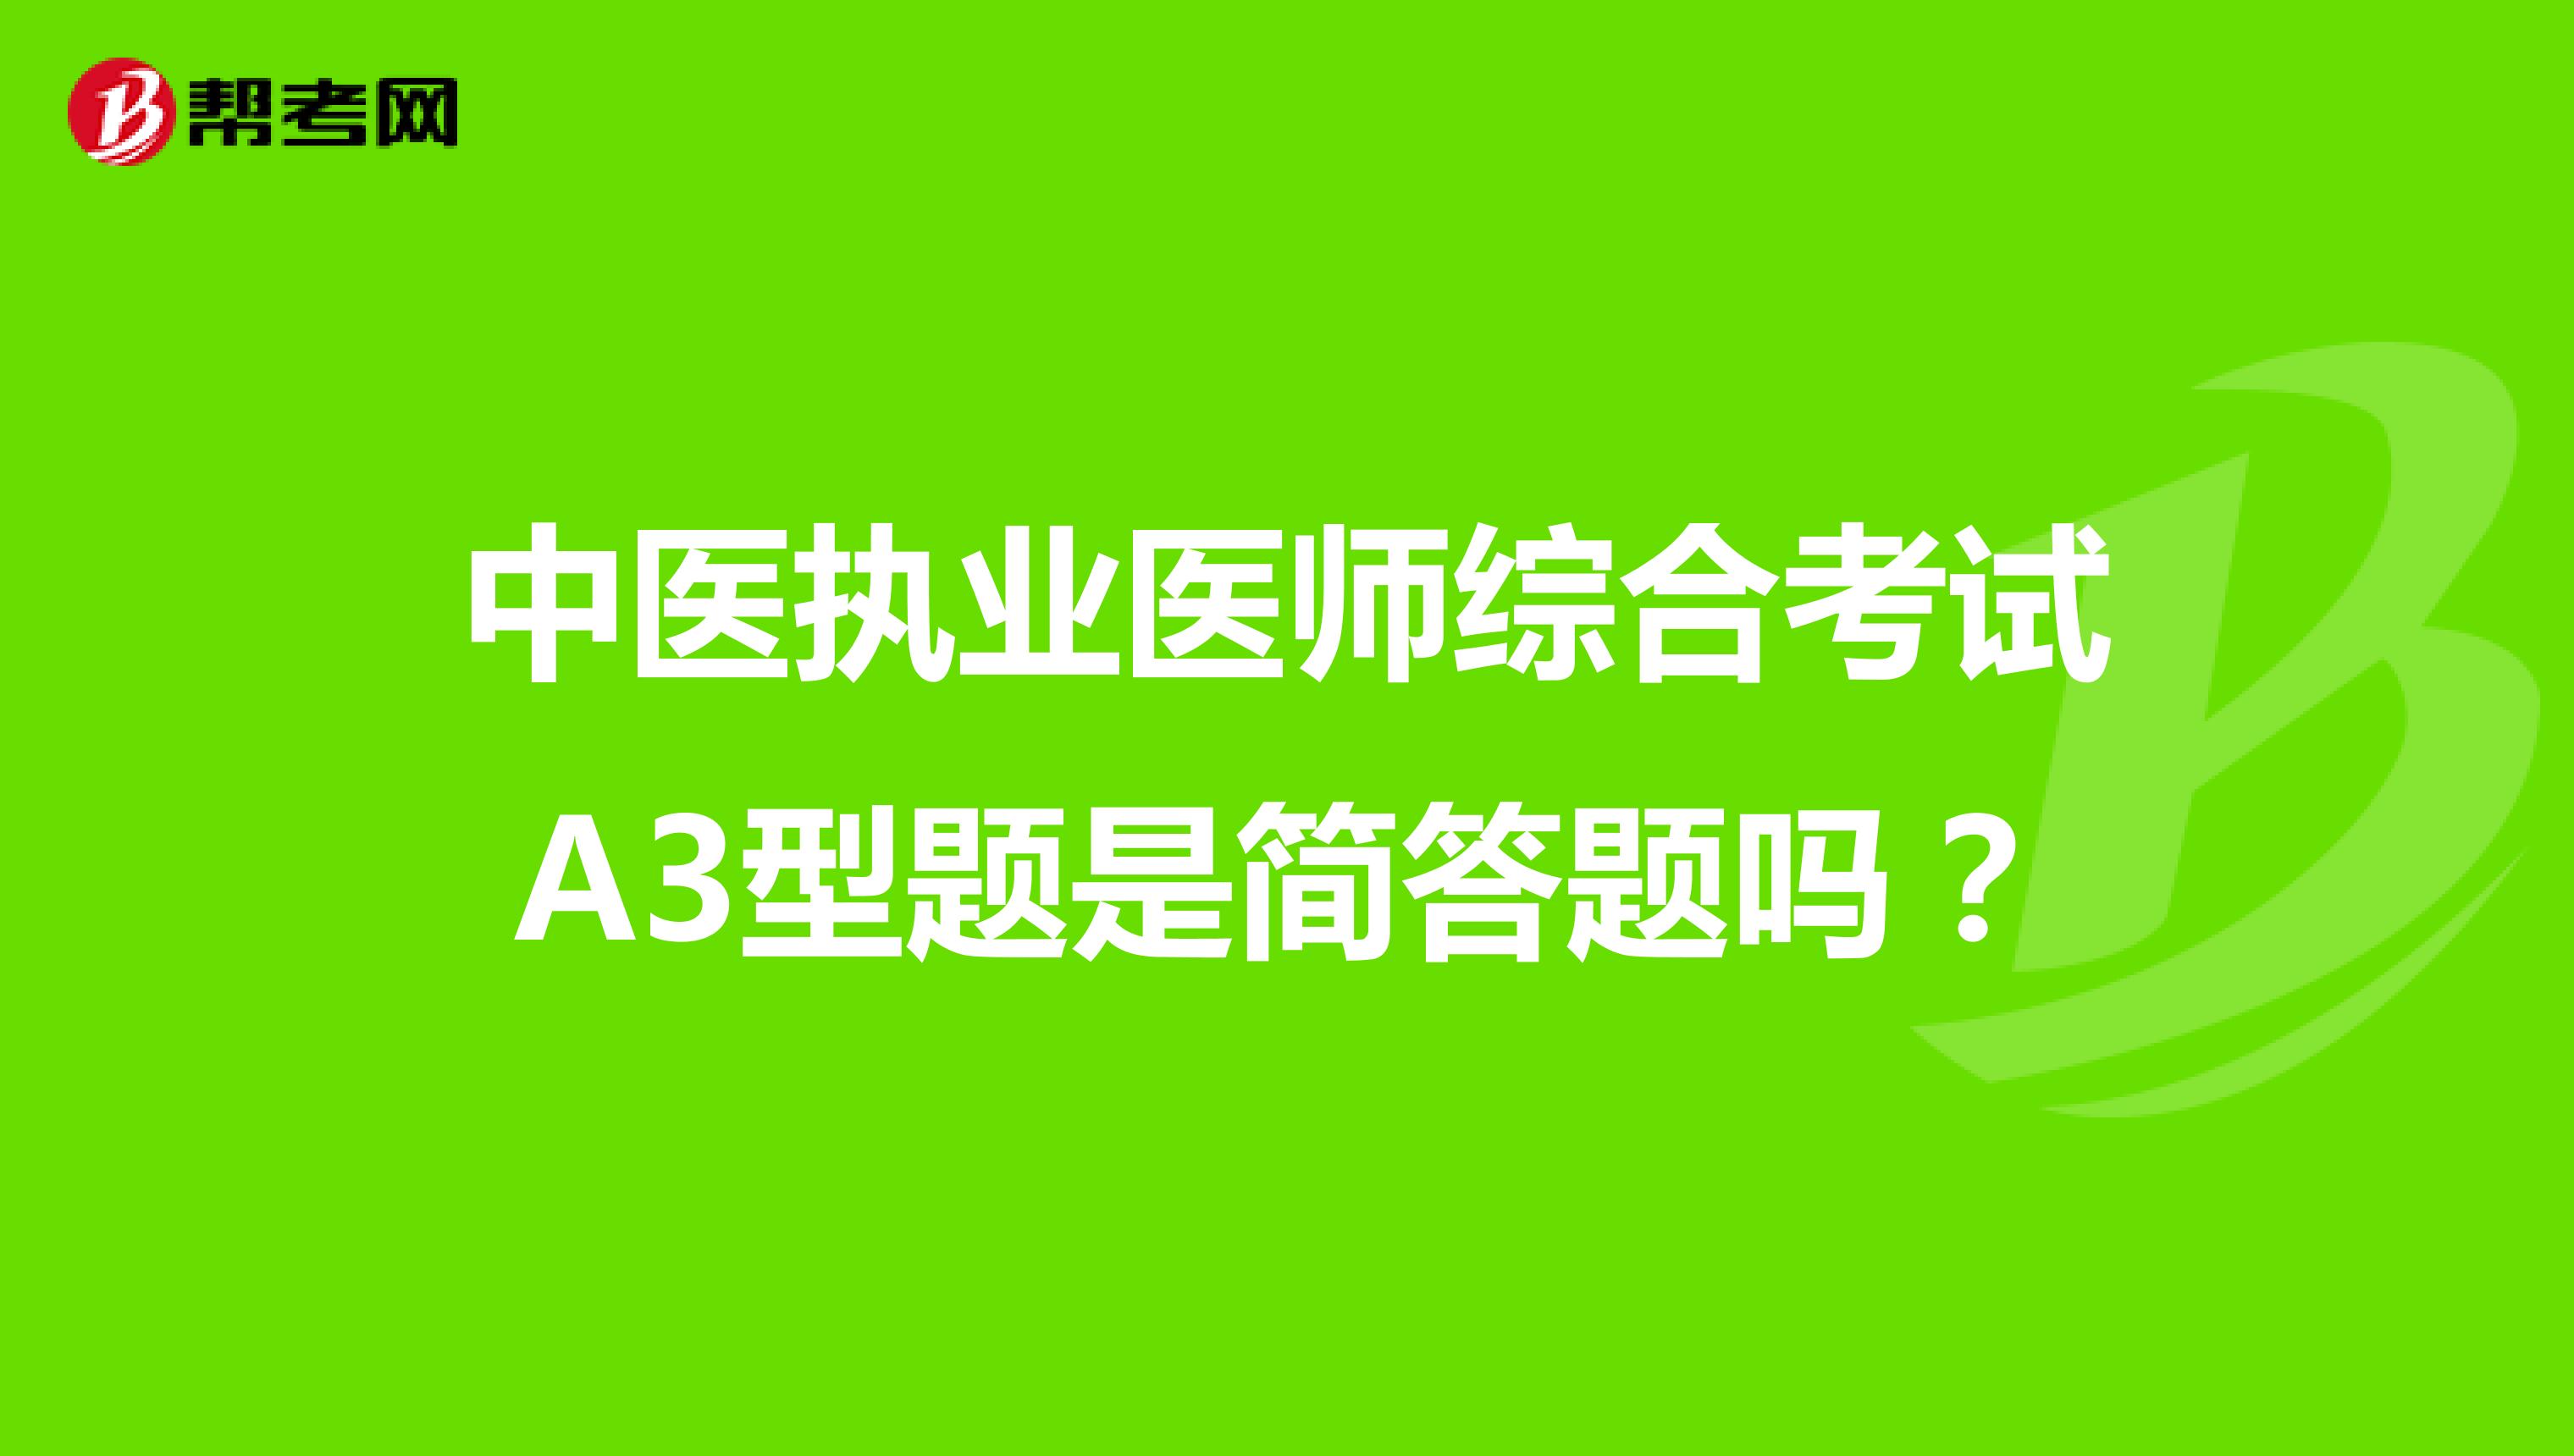 中医执业医师综合考试A3型题是简答题吗？